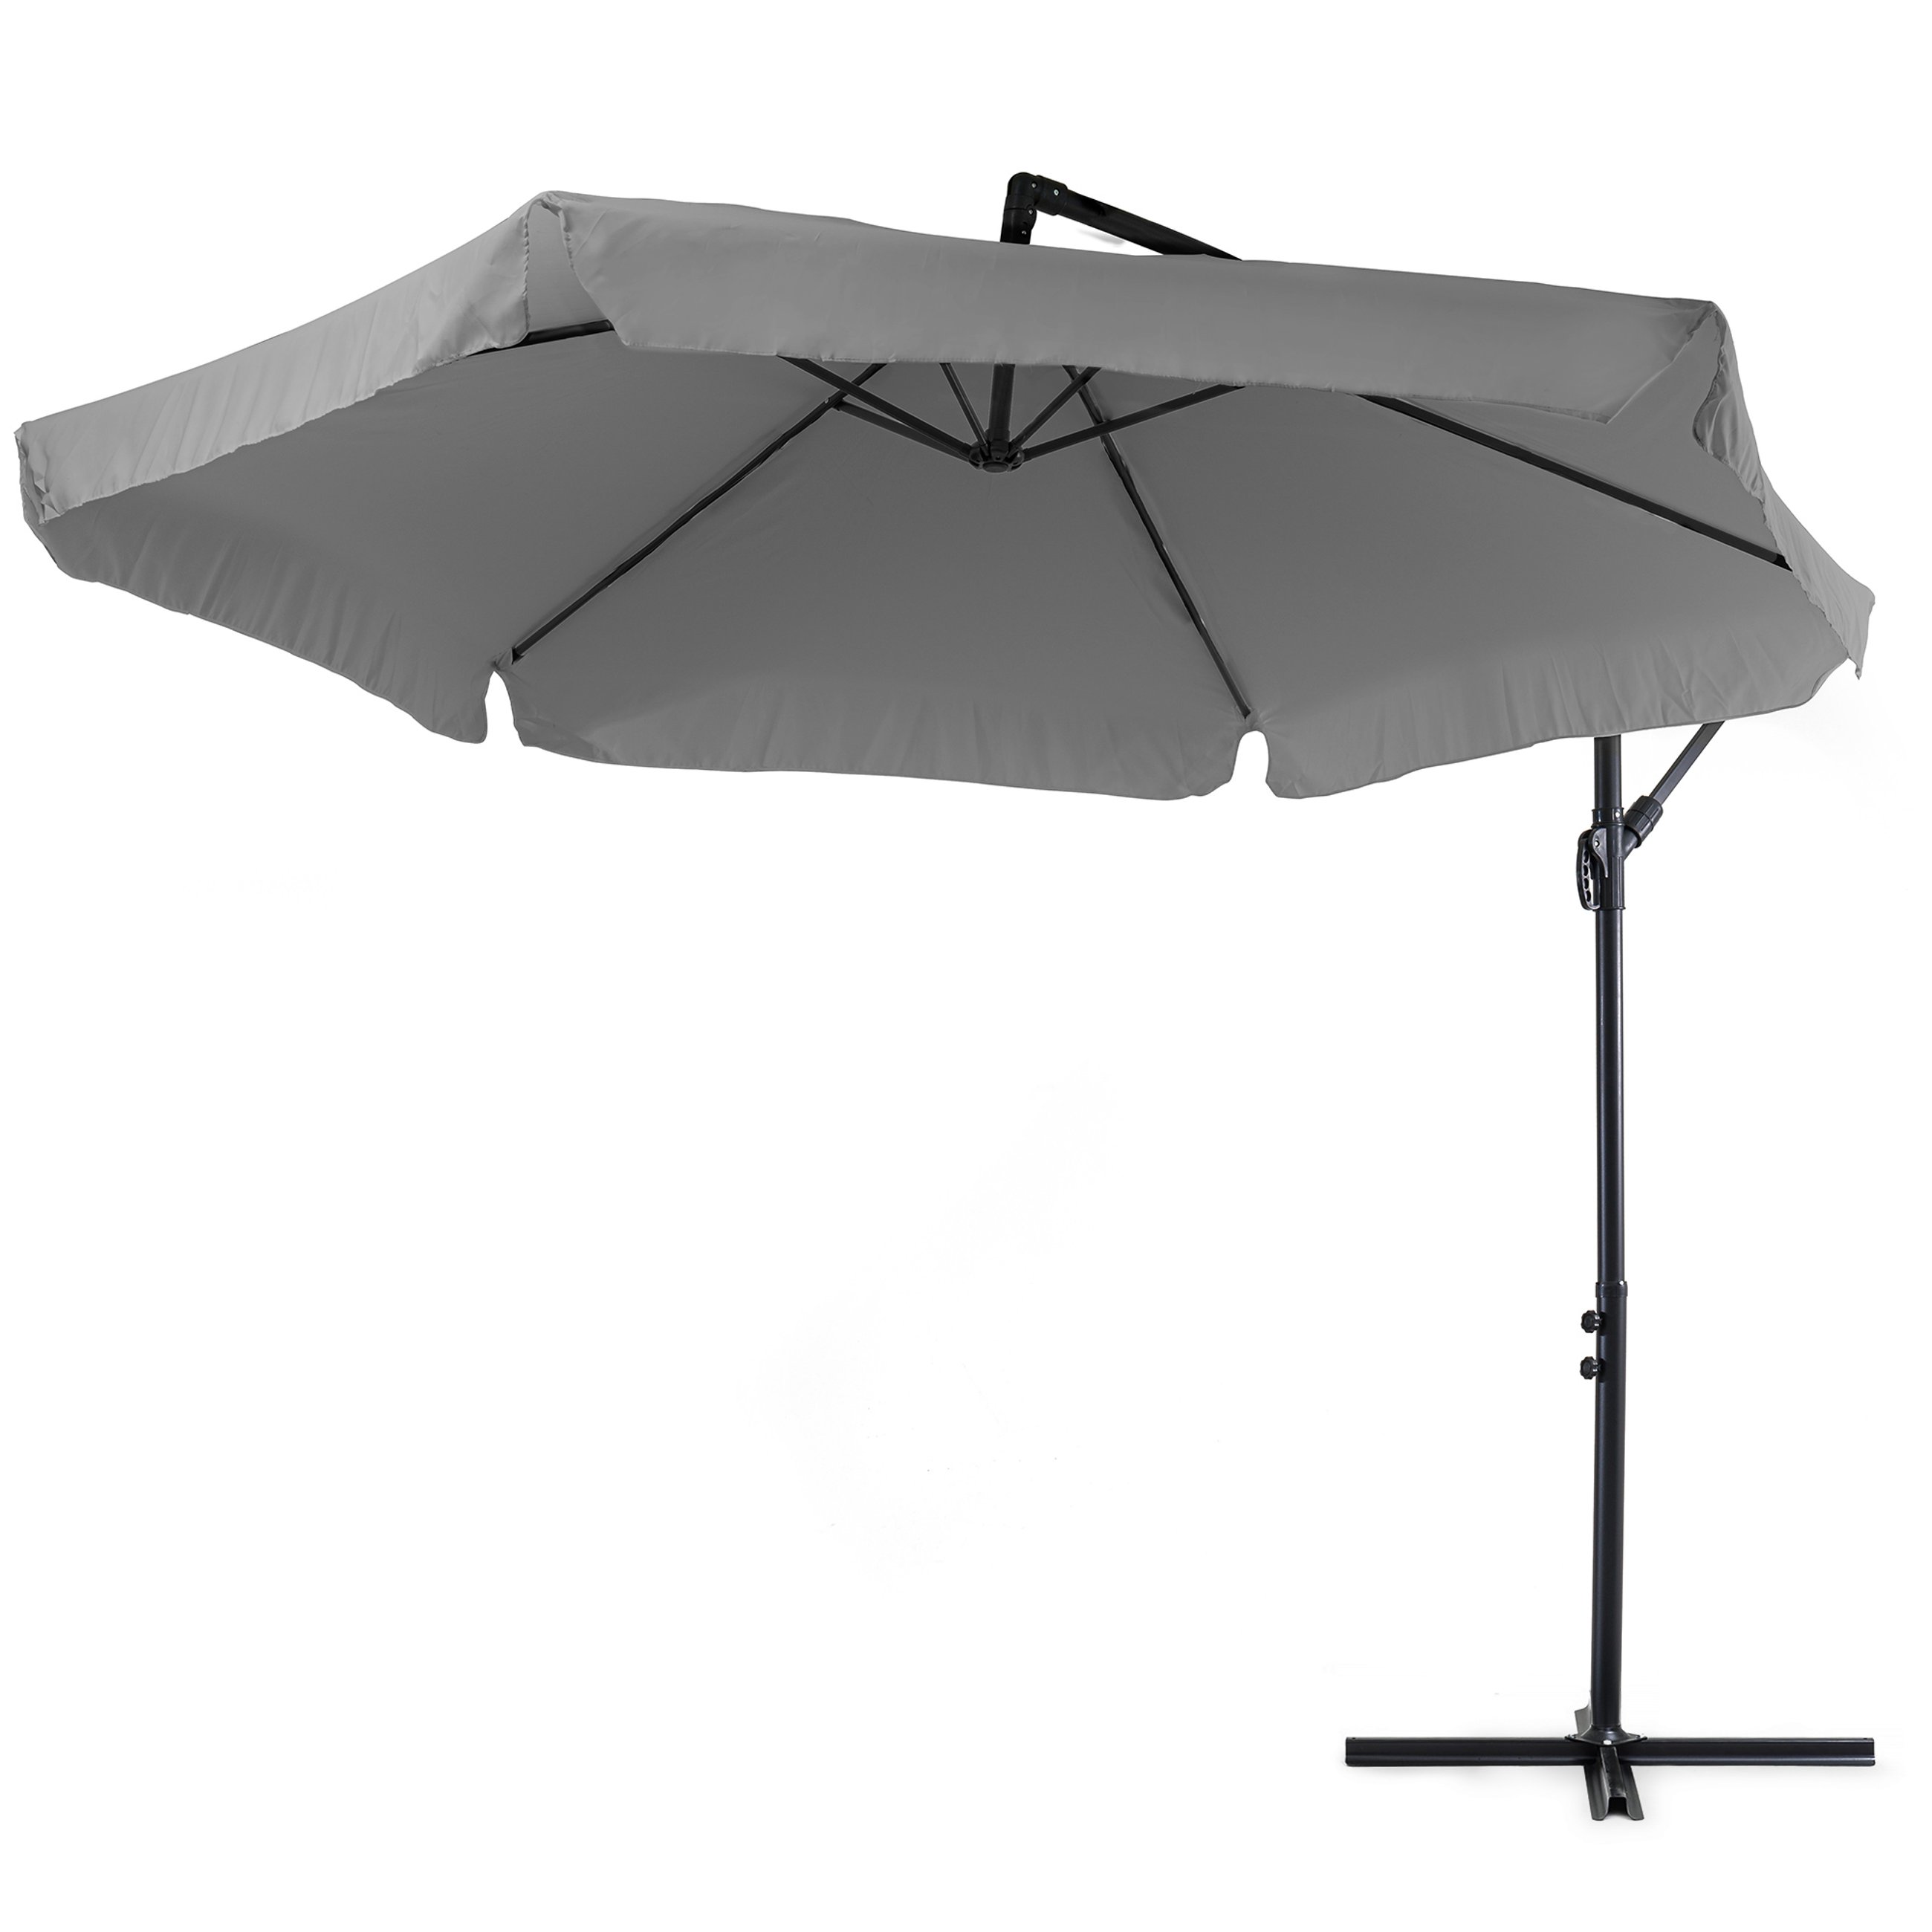 Poszycie parasola Empoli szare wykonane jest z grubej poliestrowej tkaniny